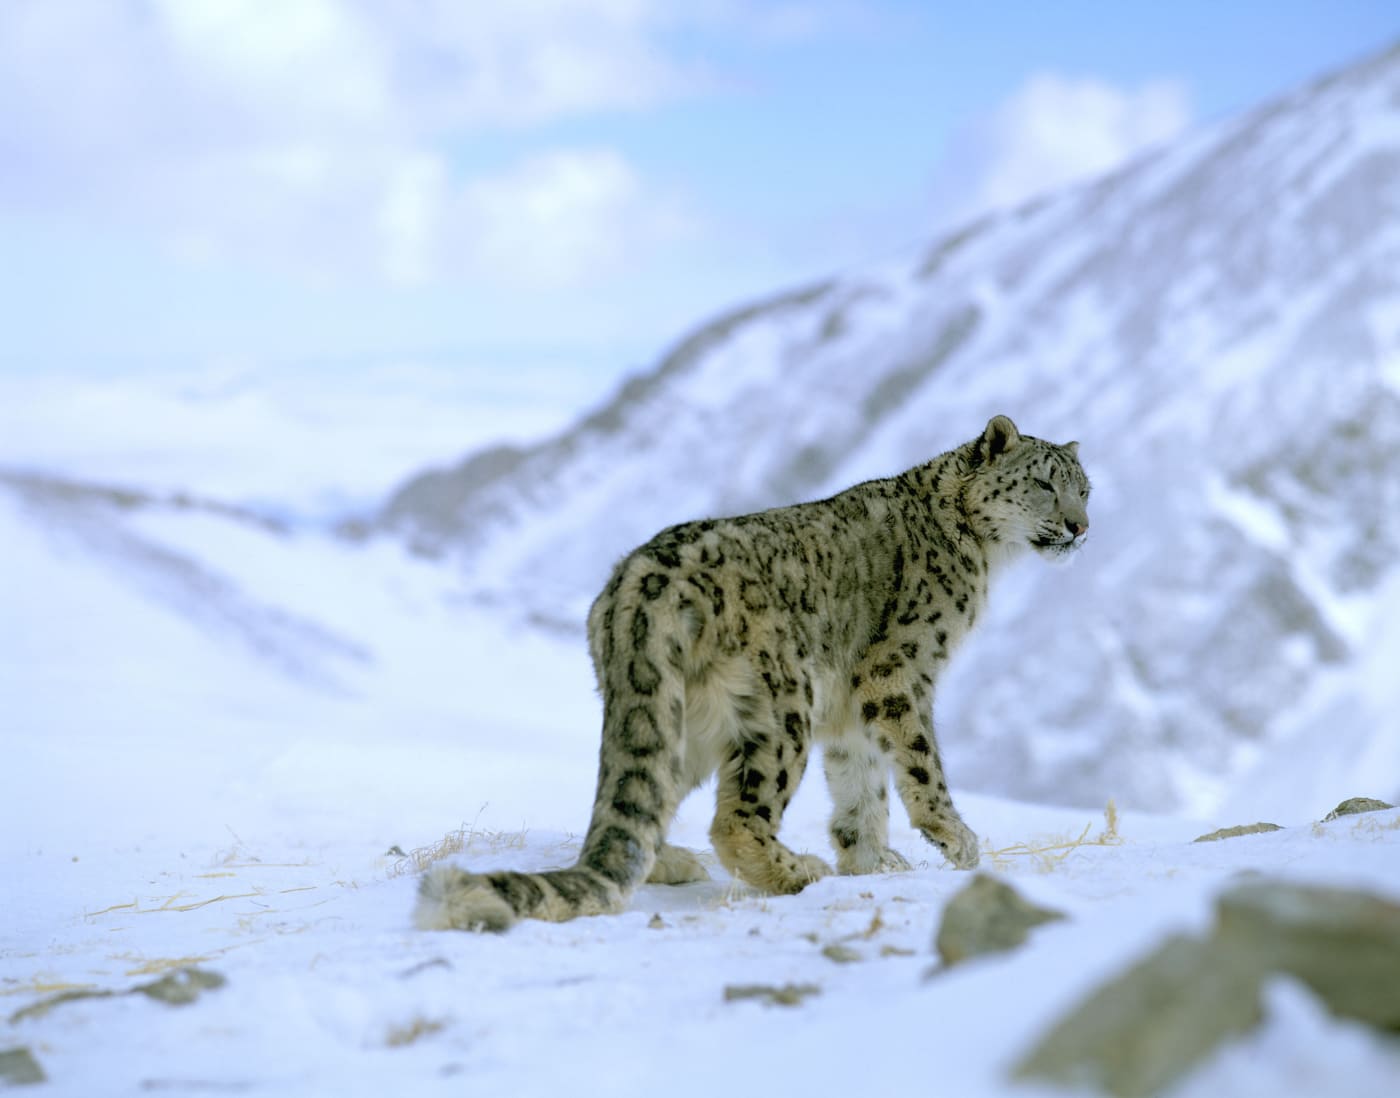 Snow leopard in snowy landscape